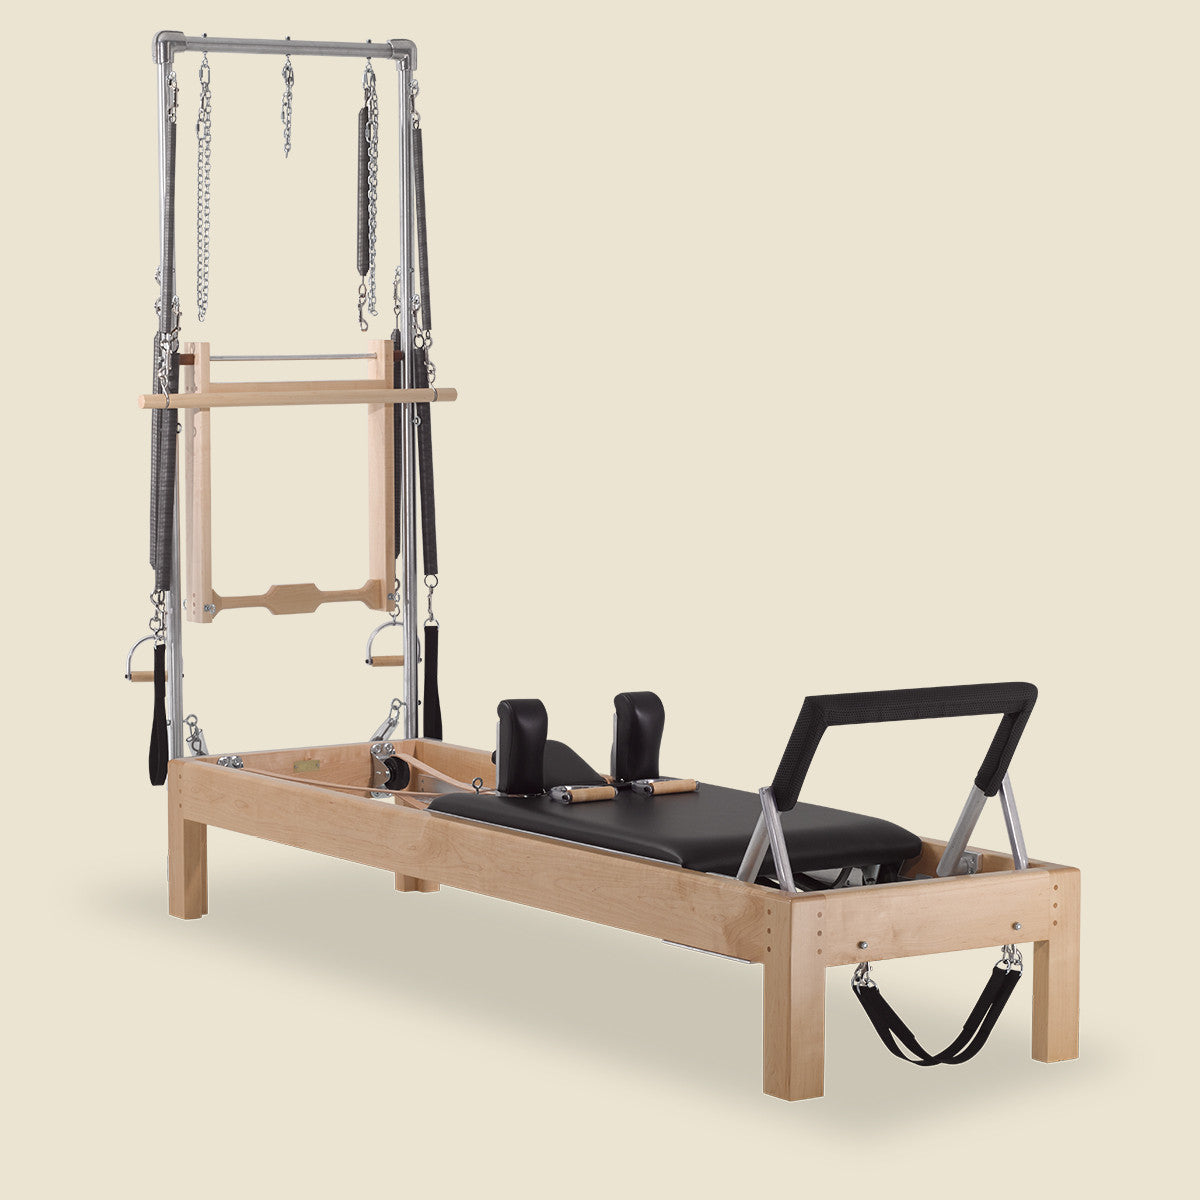 Best Environmental Wood Ladder Barrel for Strengthening Exercises